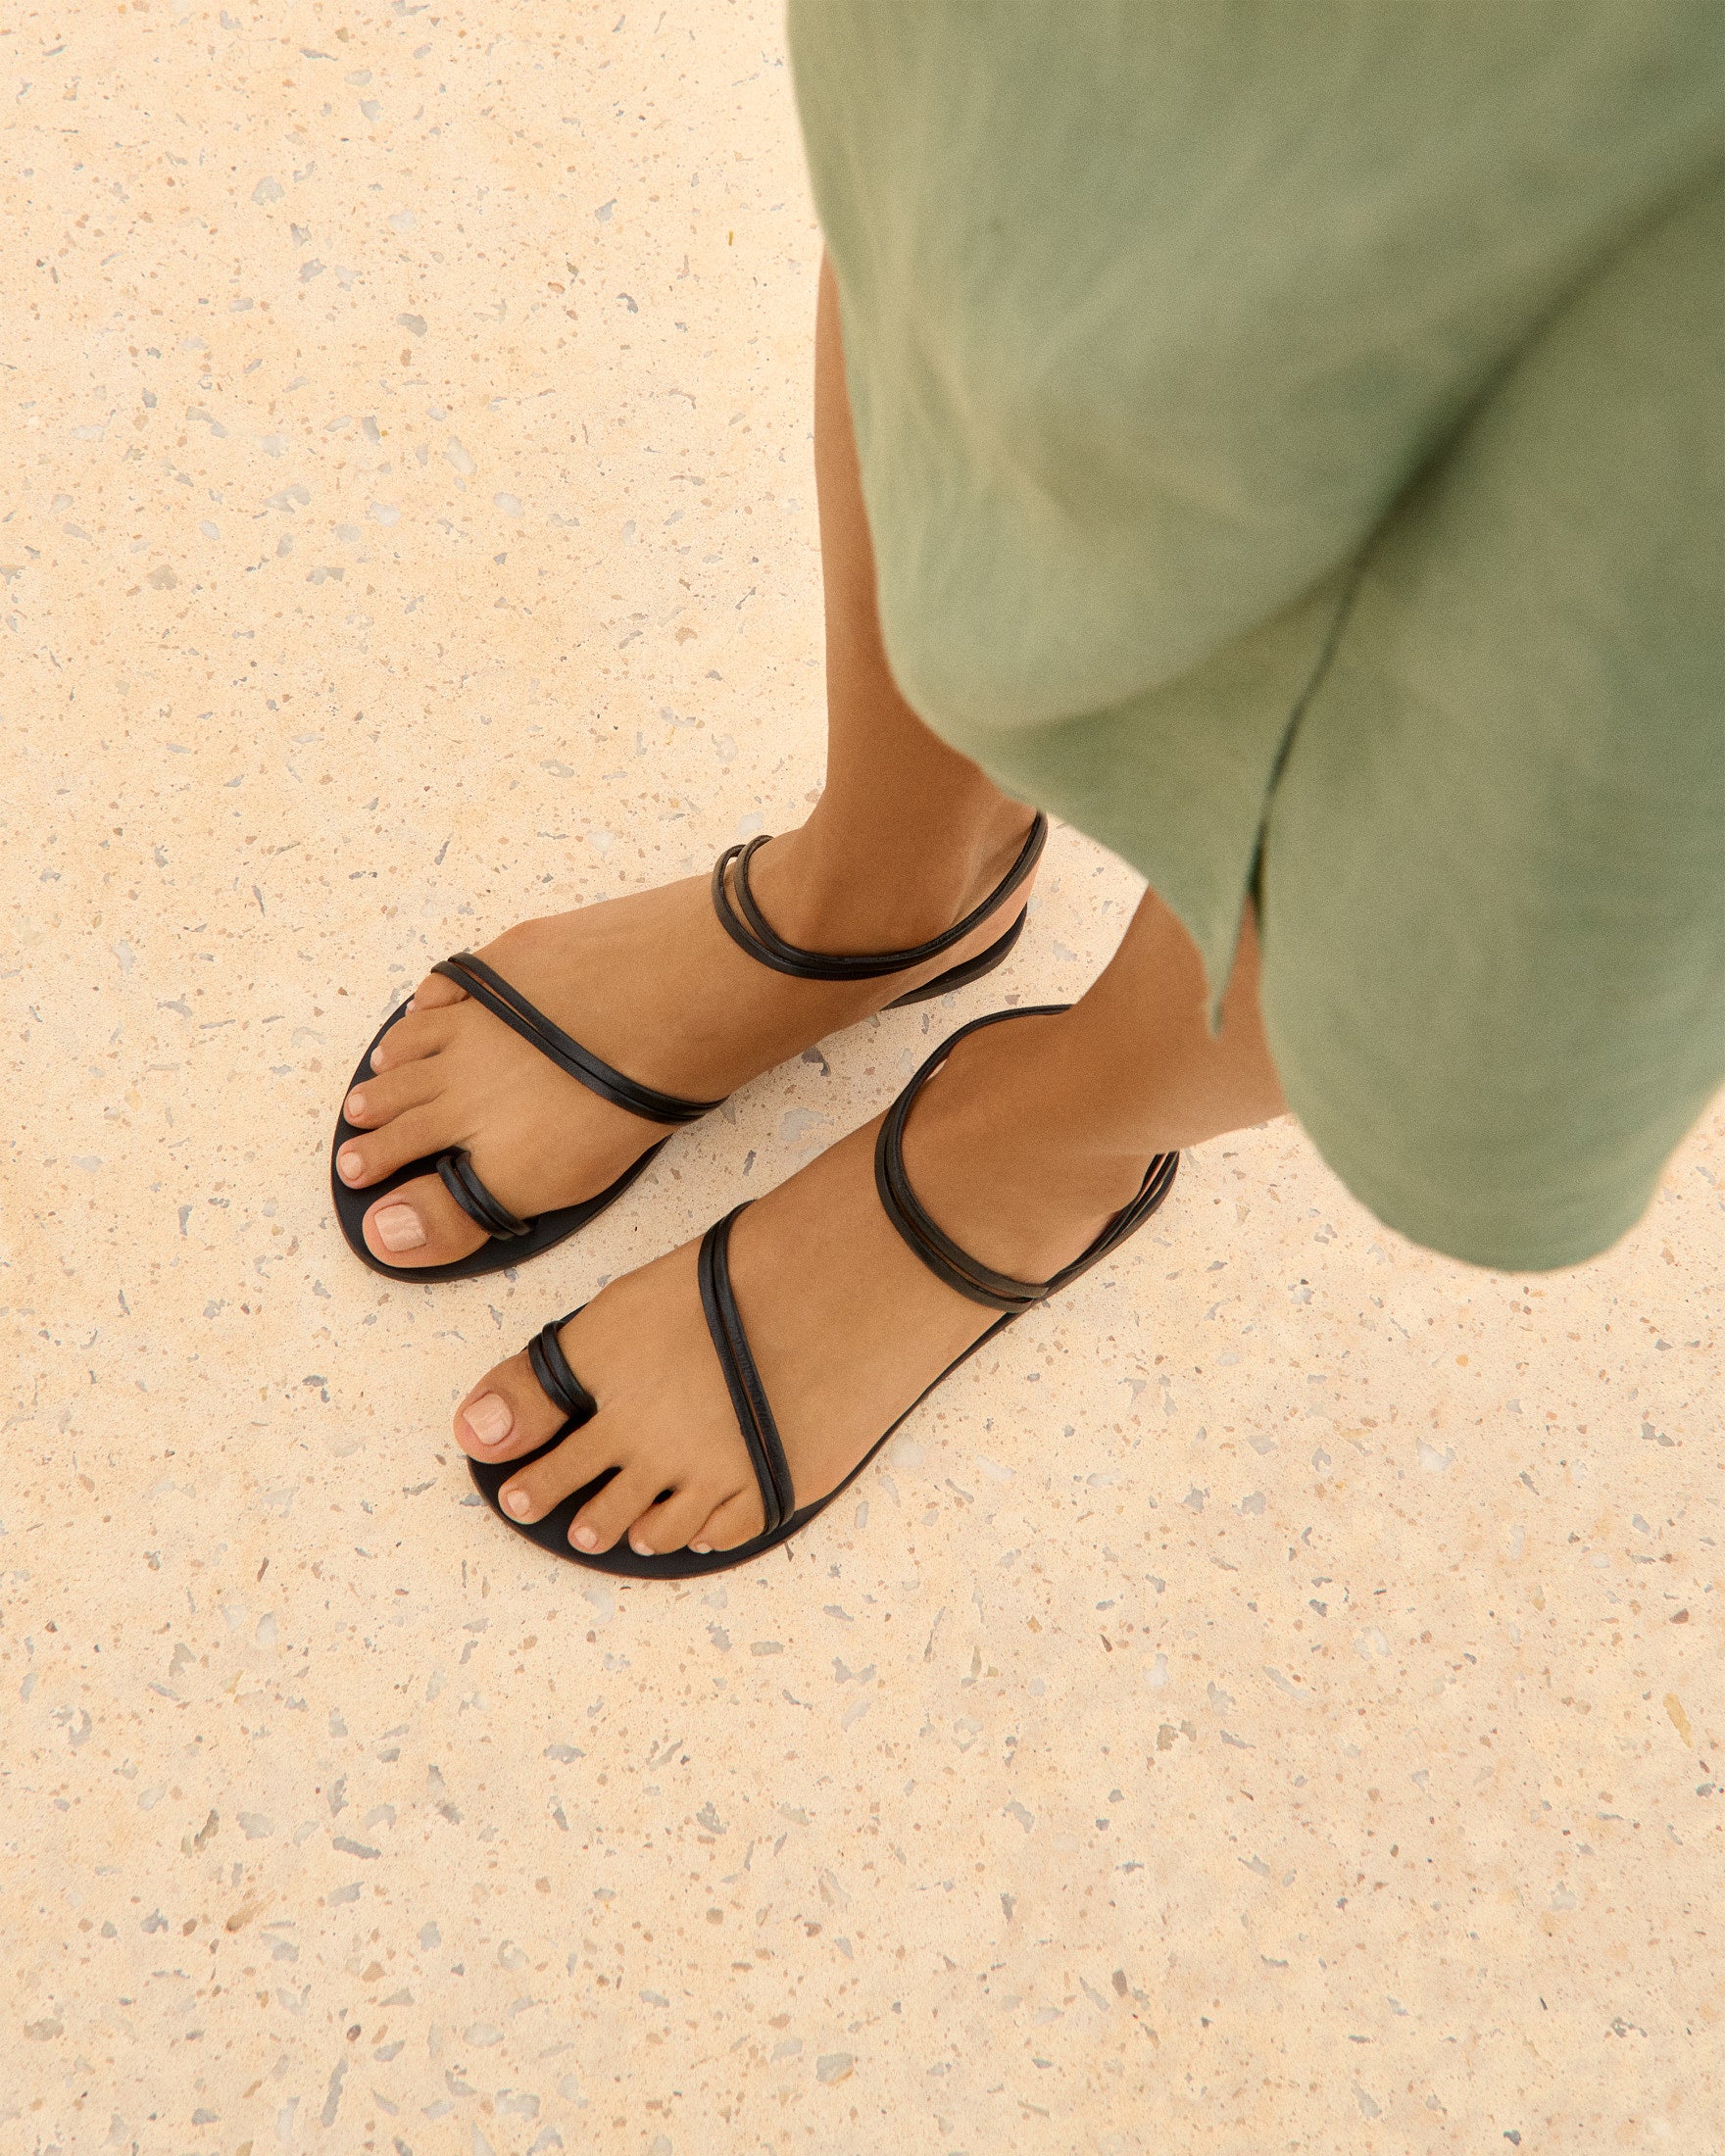 Francesca Leather Sandals - Toe Ring Black Stripes